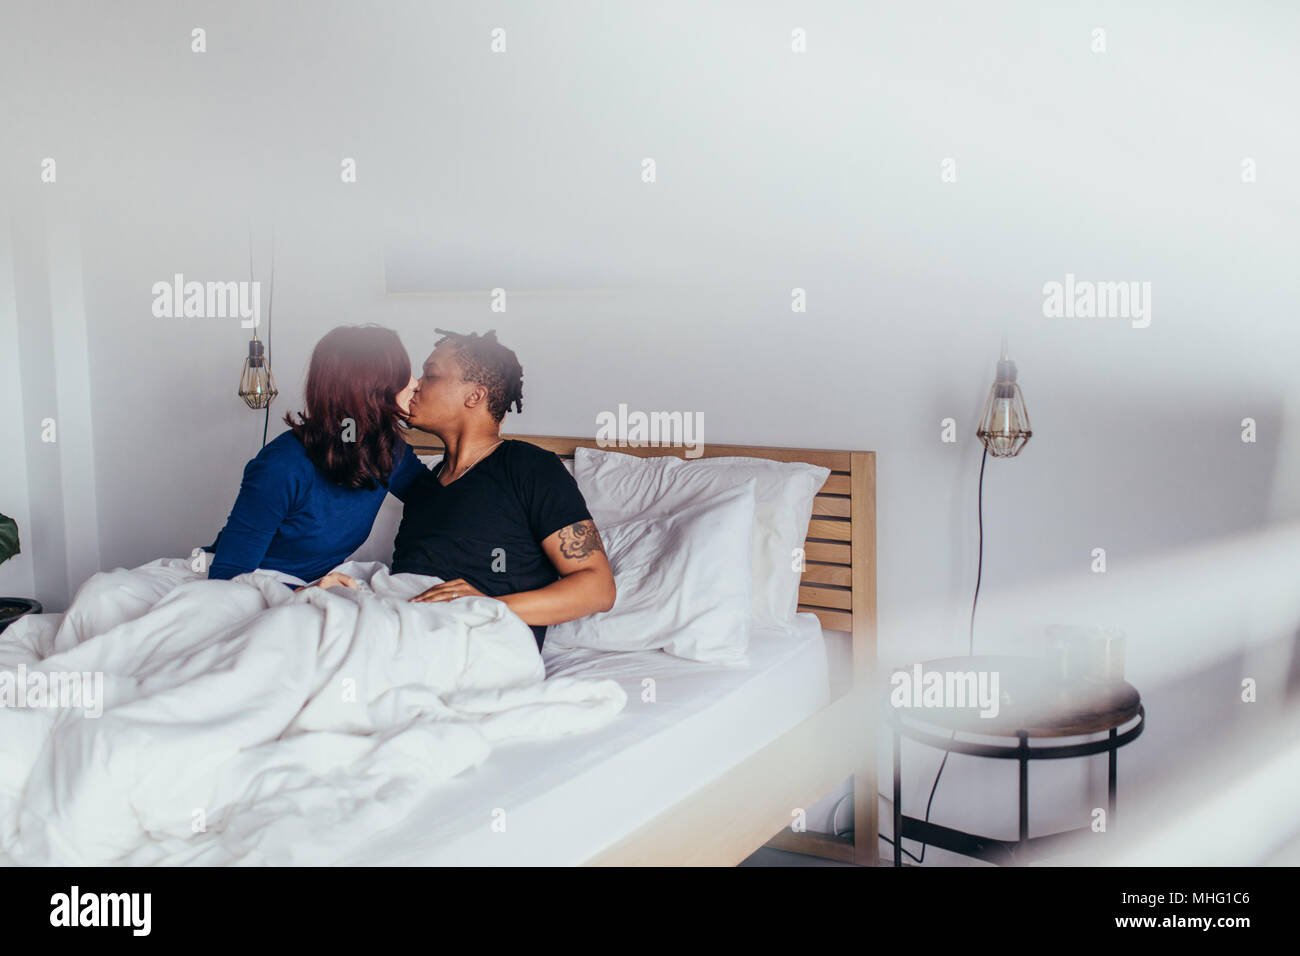 Romantisches Paar Küssen im Bett. Interracial Mann und Frau sitzt auf dem Bett und küssen sich. Stockfoto